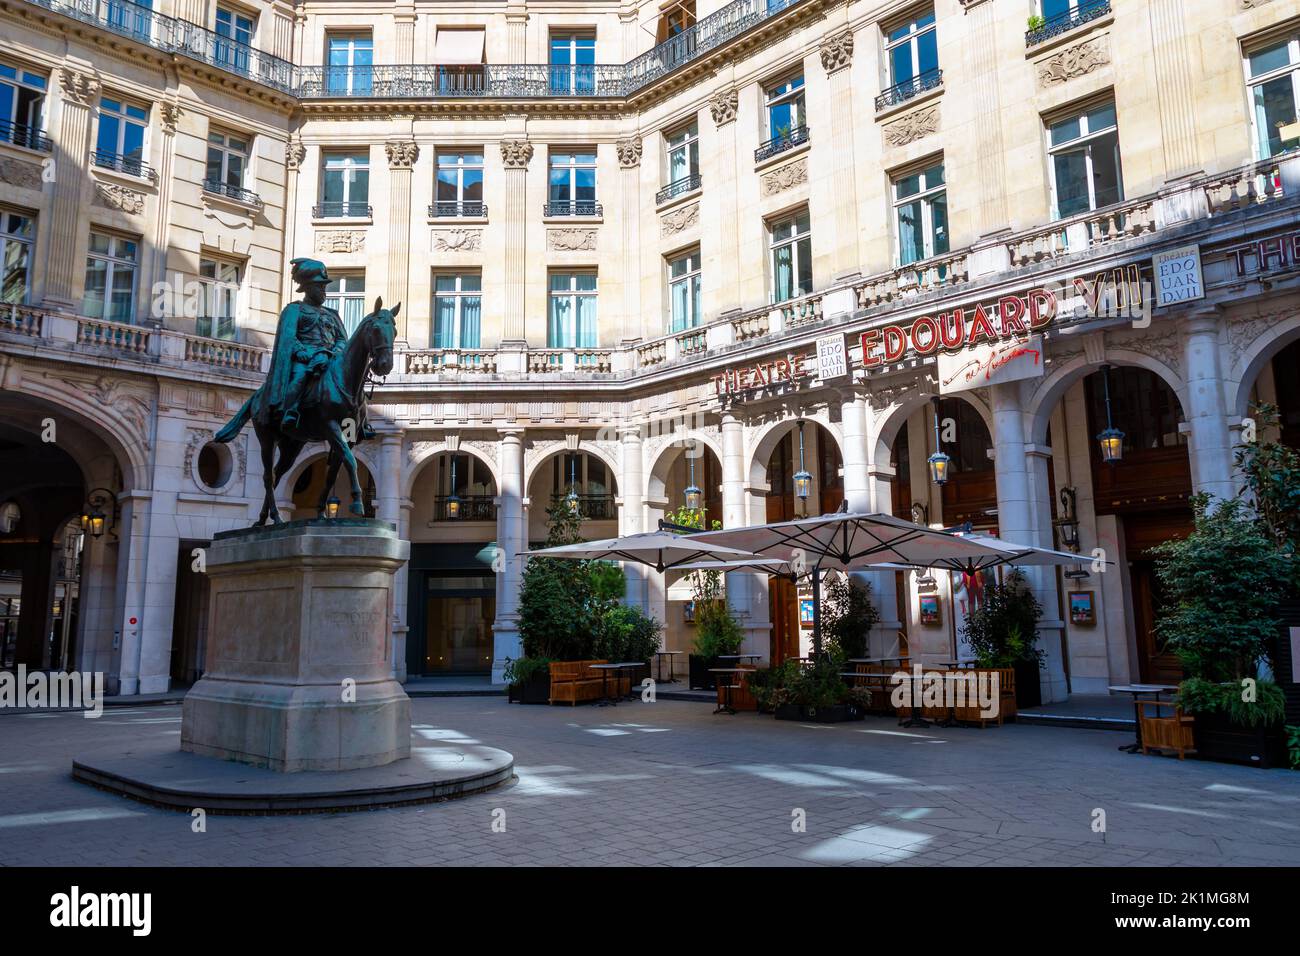 Blick auf den Place Edouard VII mit der Reiterstatue von König Eduard VII und das Theater Edouard VII im Pariser Arrondissement 9. Stockfoto